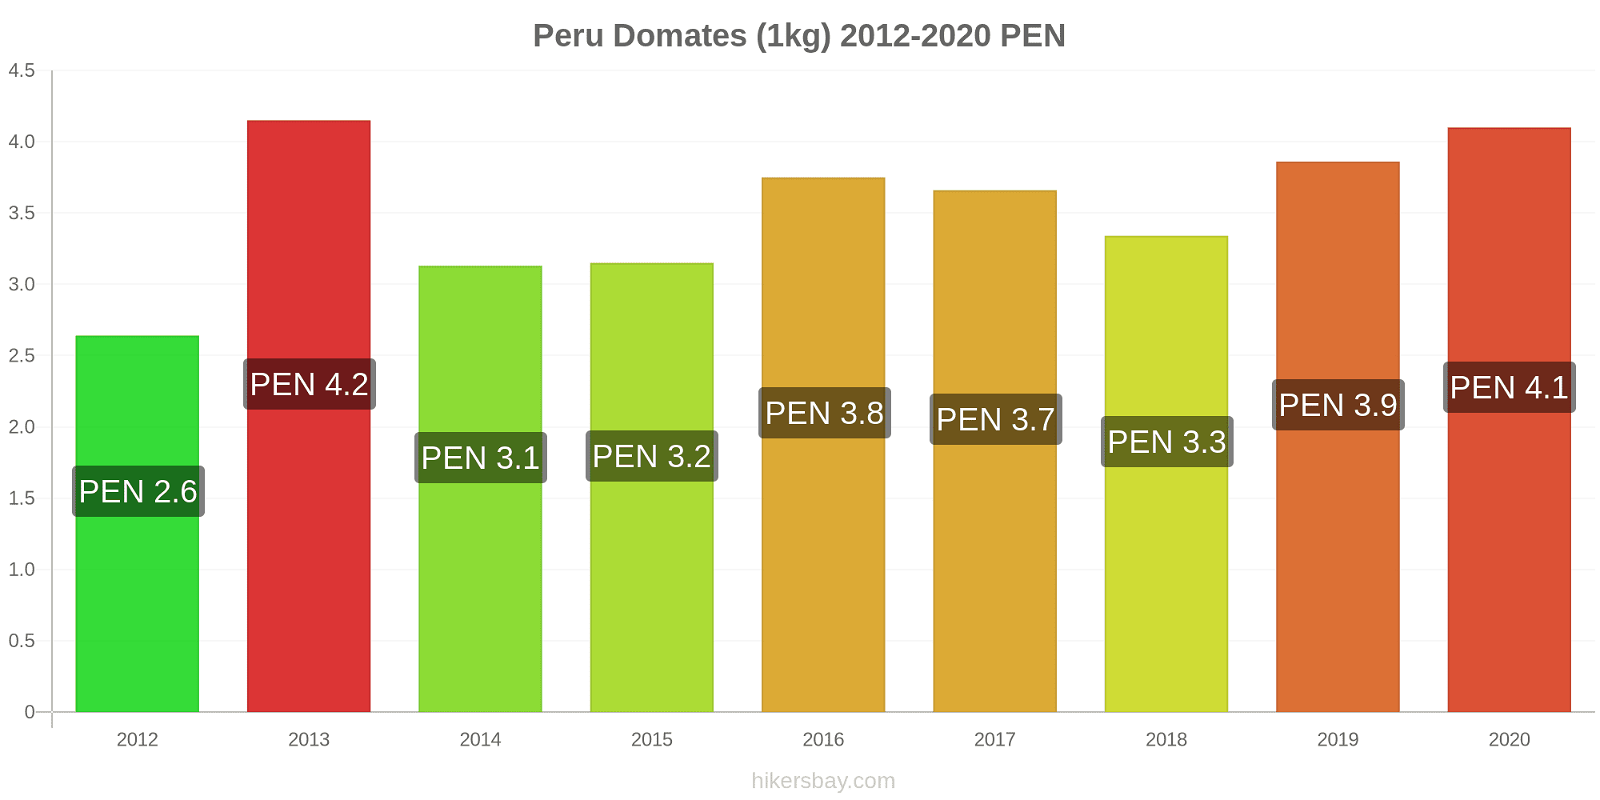 Peru fiyat değişiklikleri Domates (1kg) hikersbay.com